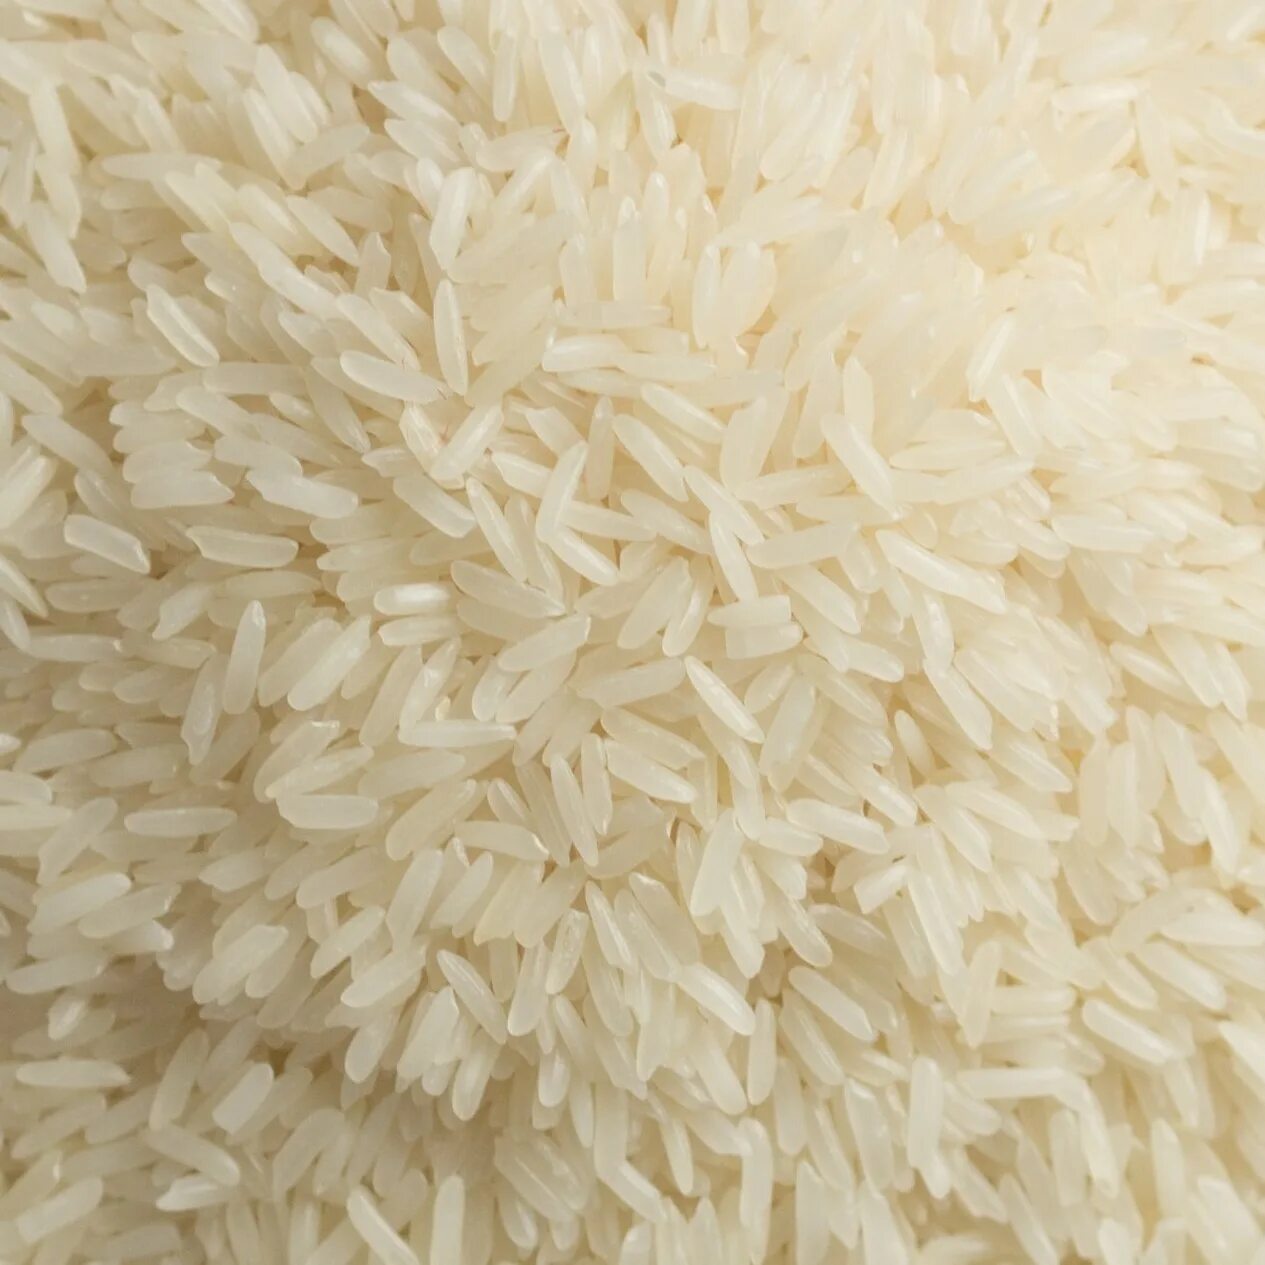 Рис басмати вареный. Патна рис. Длиннозерный рассыпчатый рис. Виды риса басмати.